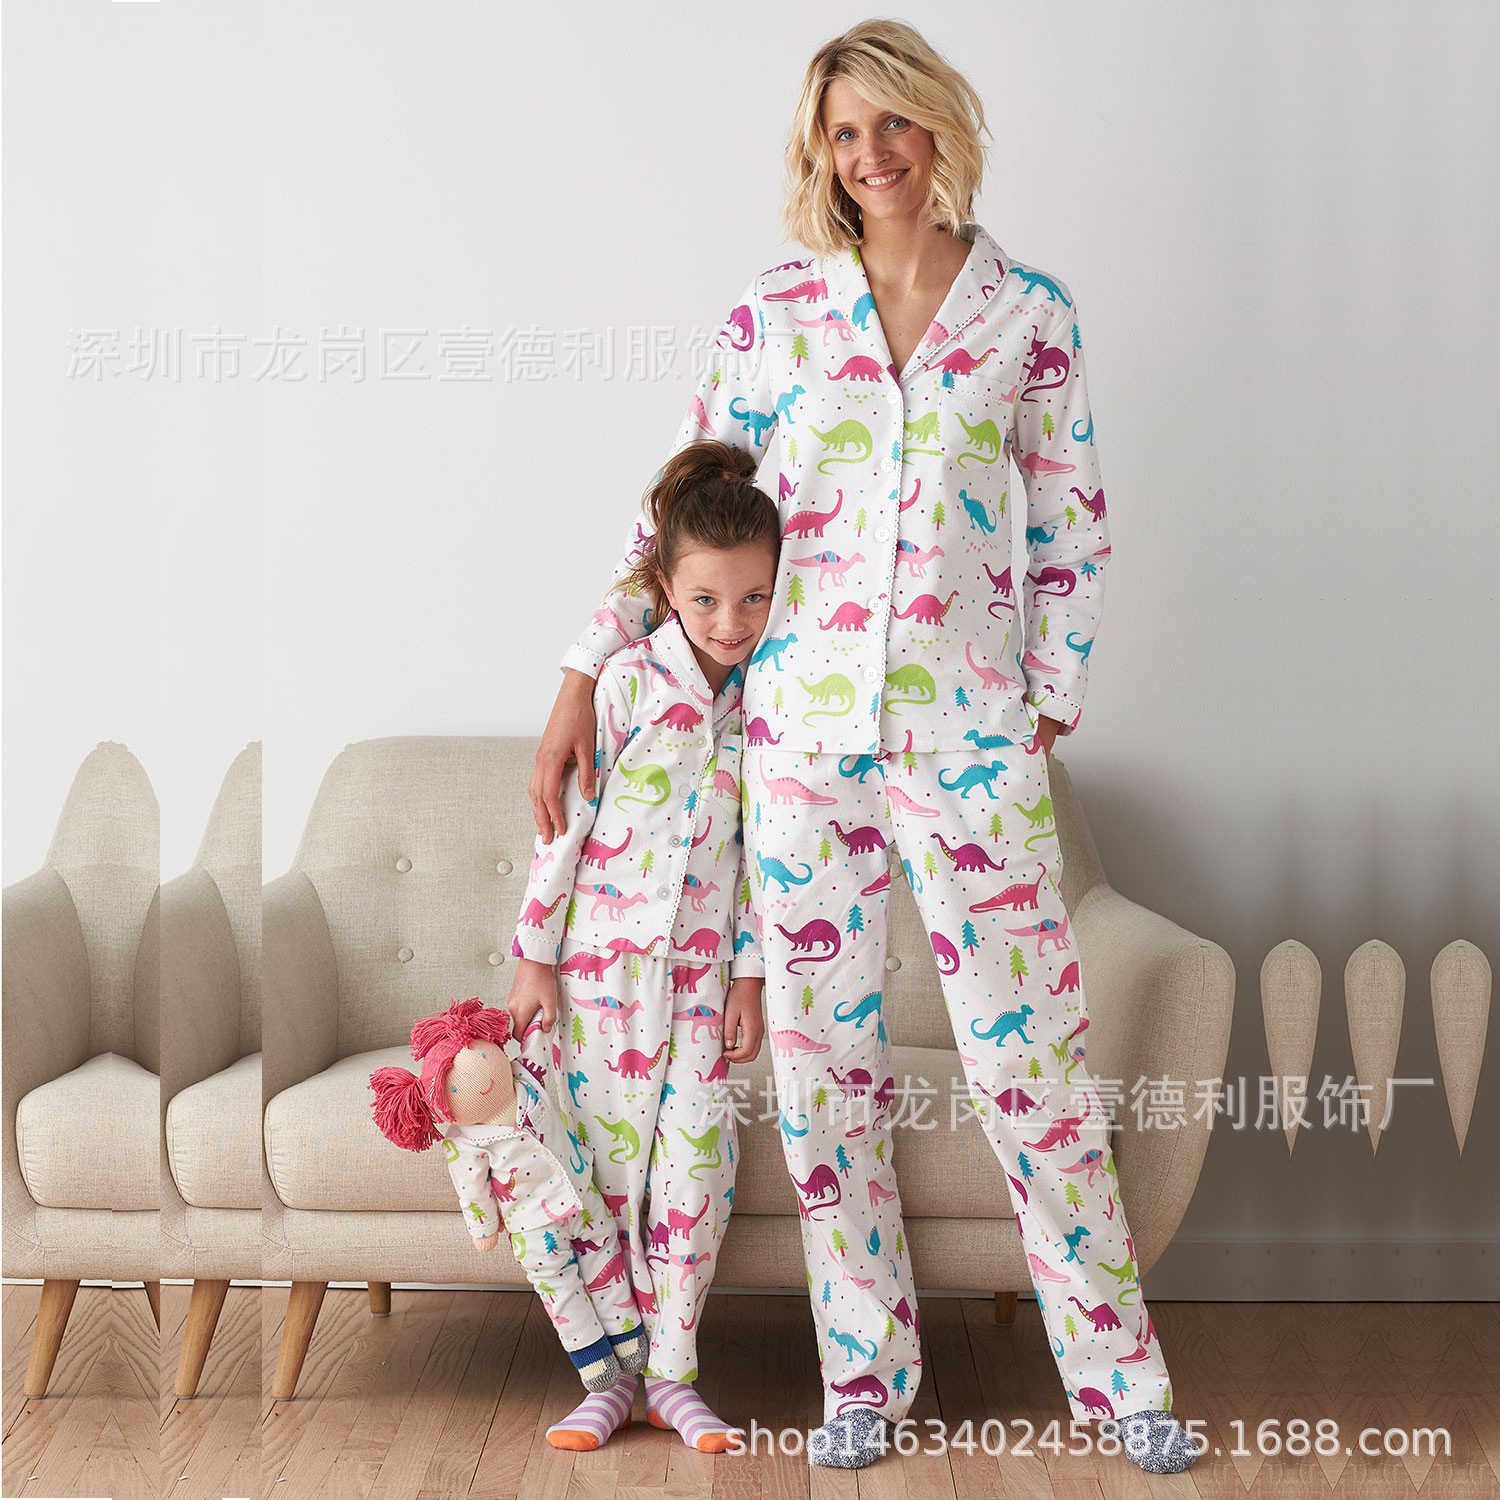 Otthoni viselet divat pizsama hosszú ujjú gyermek hálóruha Rajzfilmmintás hálóruha gyerekeknek